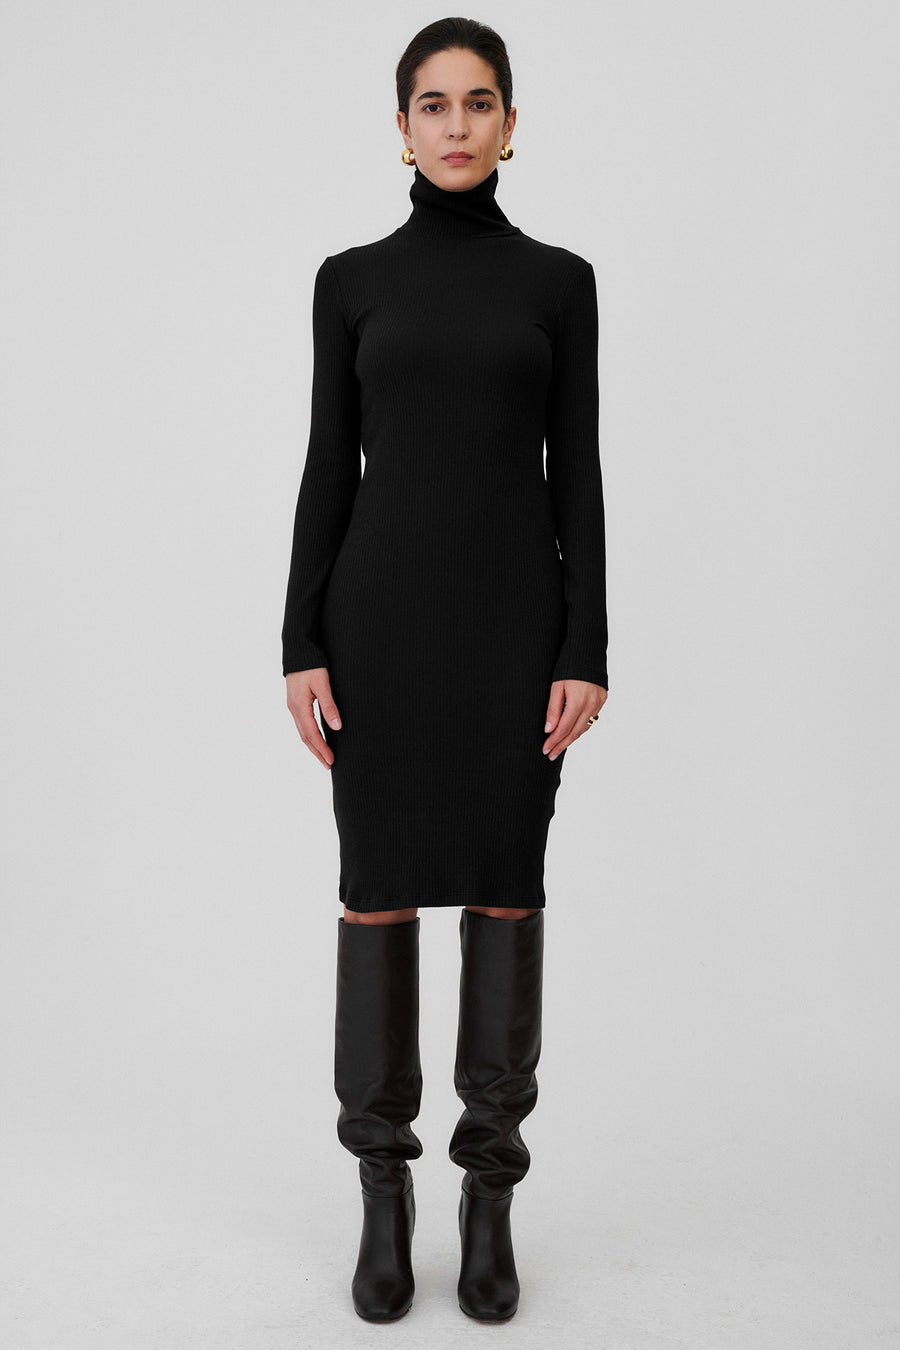 Sukienka z bawełny organicznej / 02 / 01 / onyx black PRE-ORDER